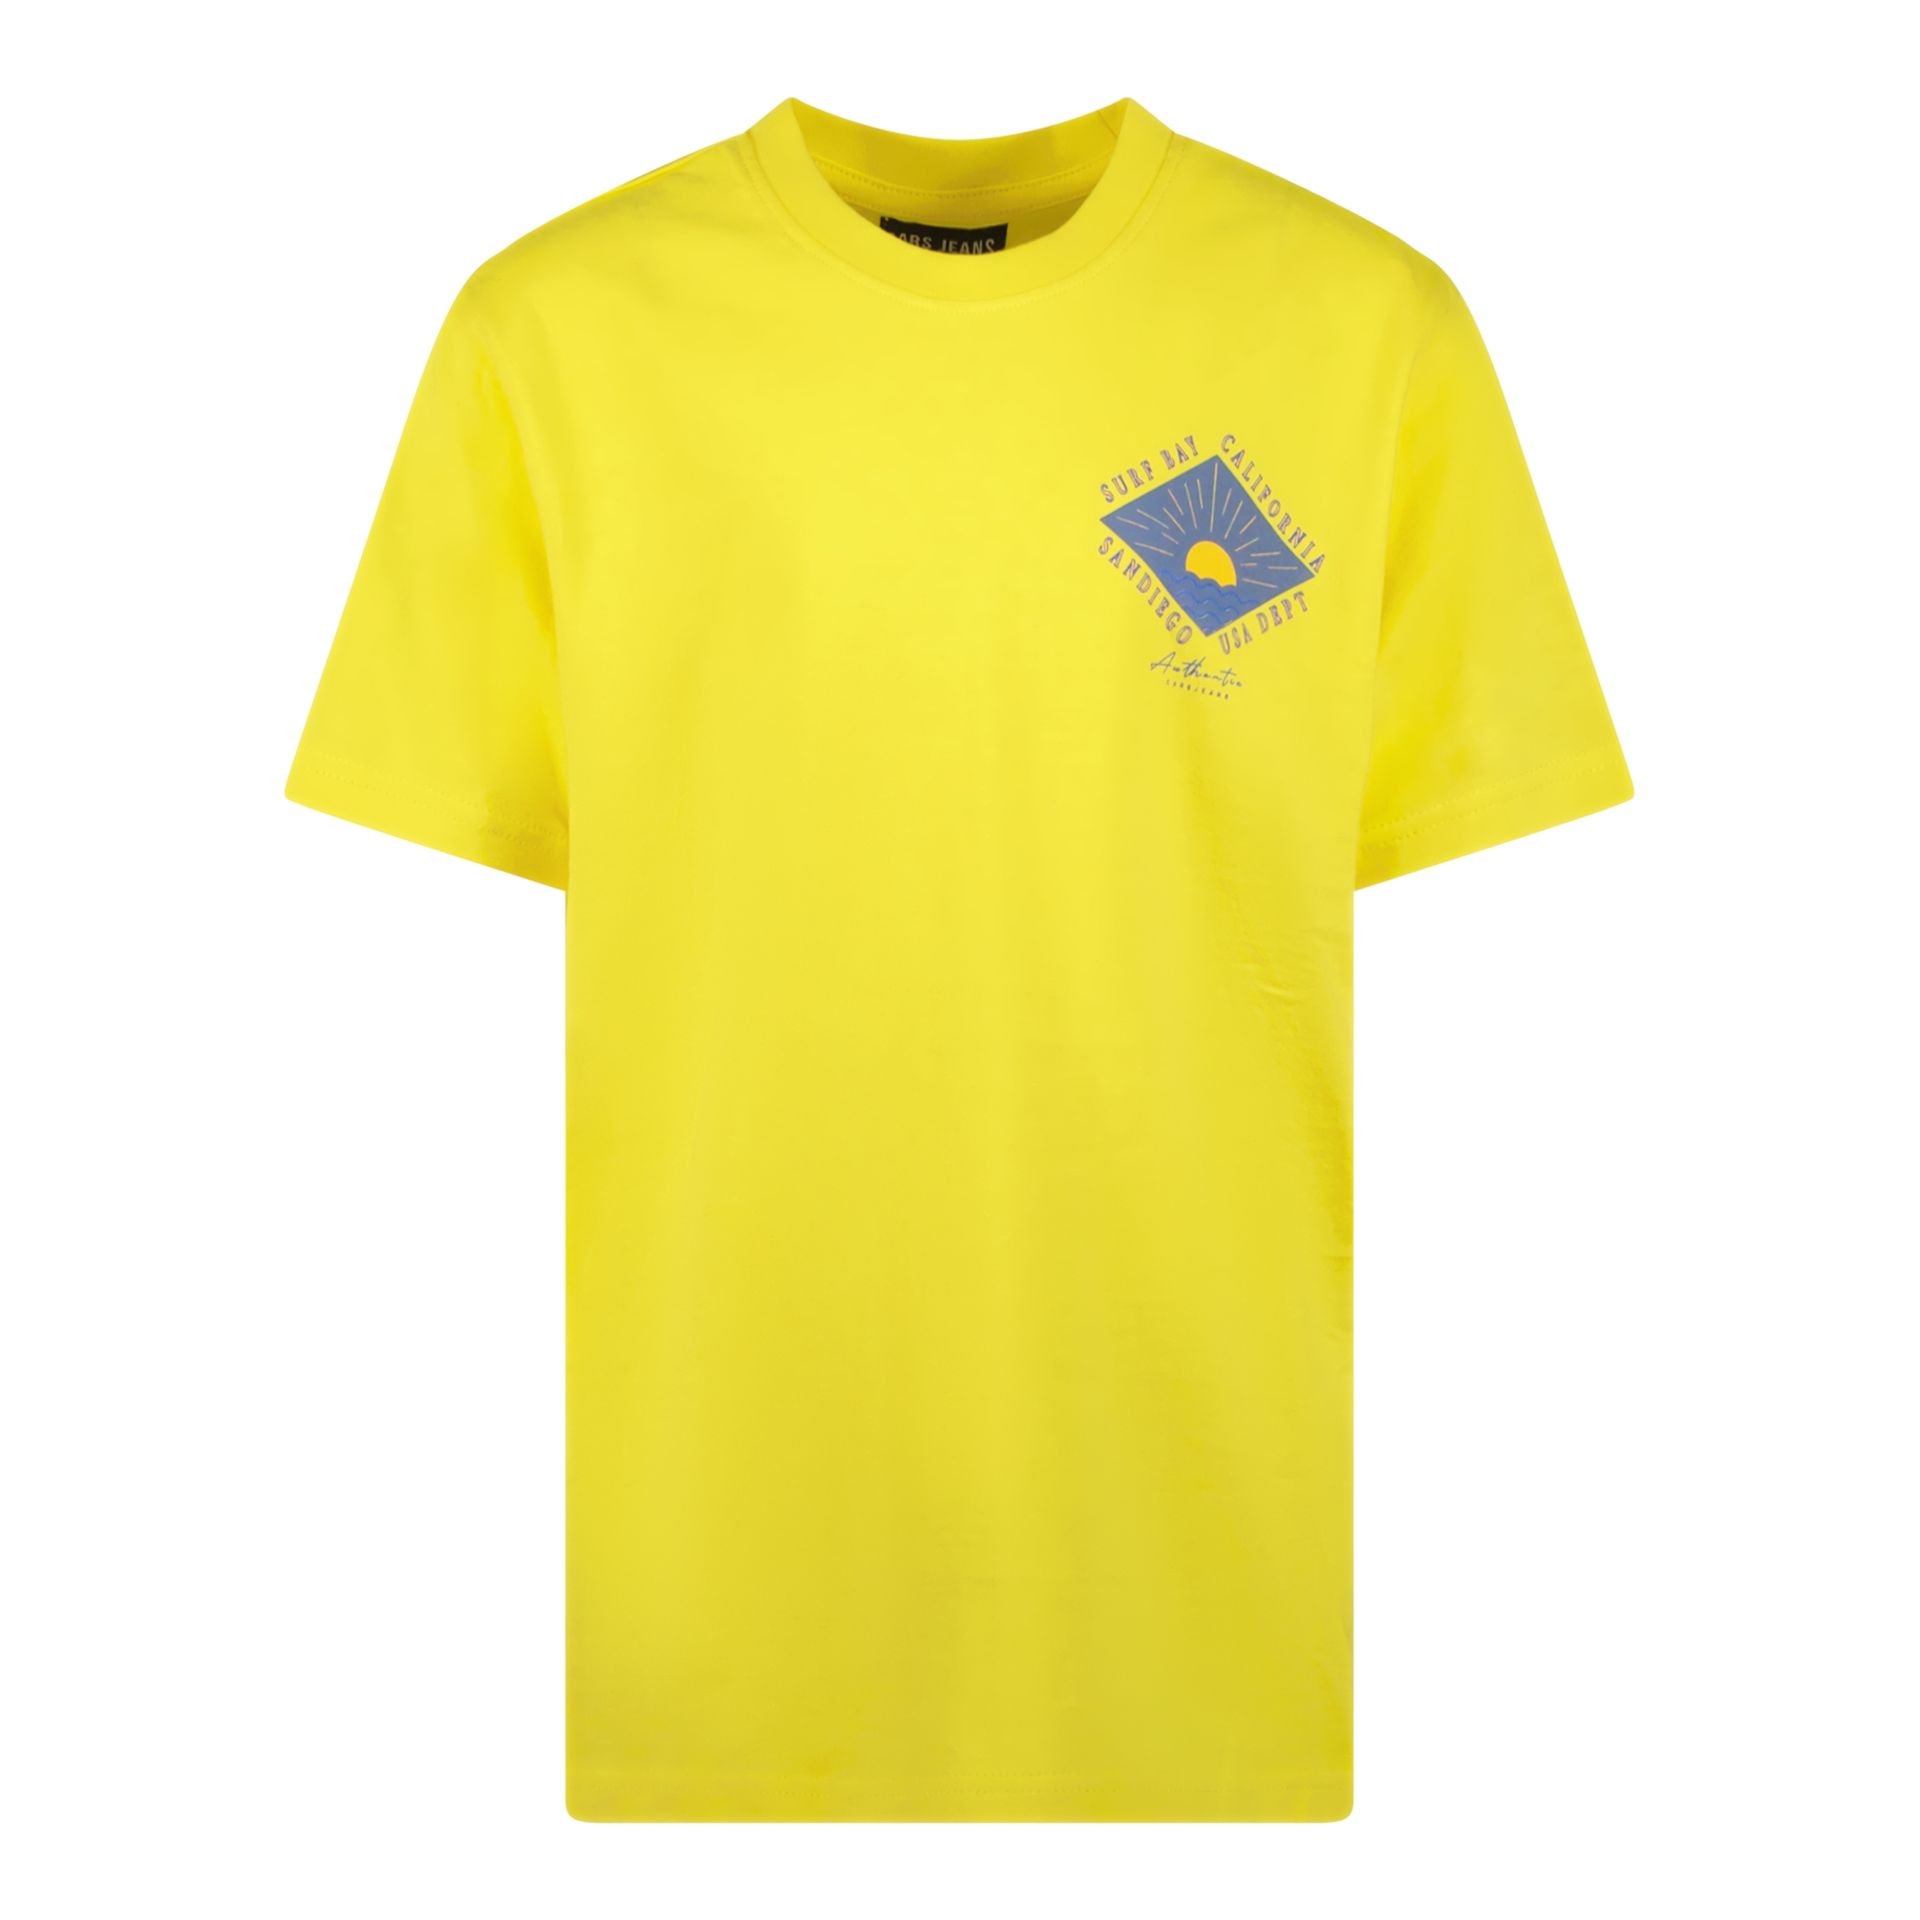 Cars jeans T-shirt Shorell Jr. 30 yellow 00108822-EKA03000200000049